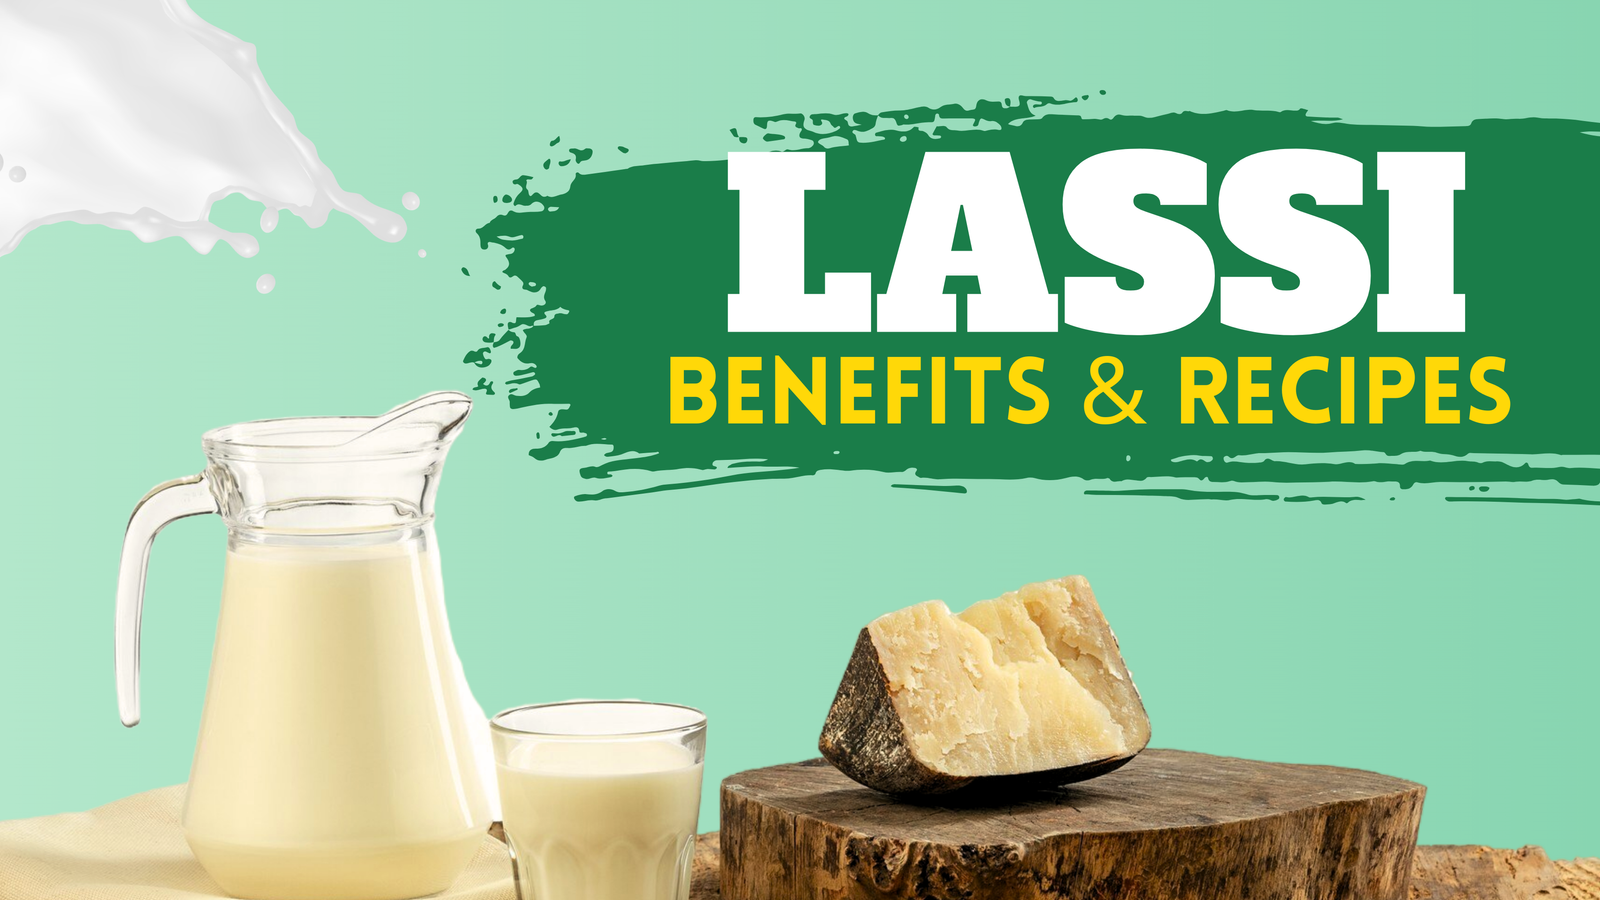 Lassi, benefits and recipes